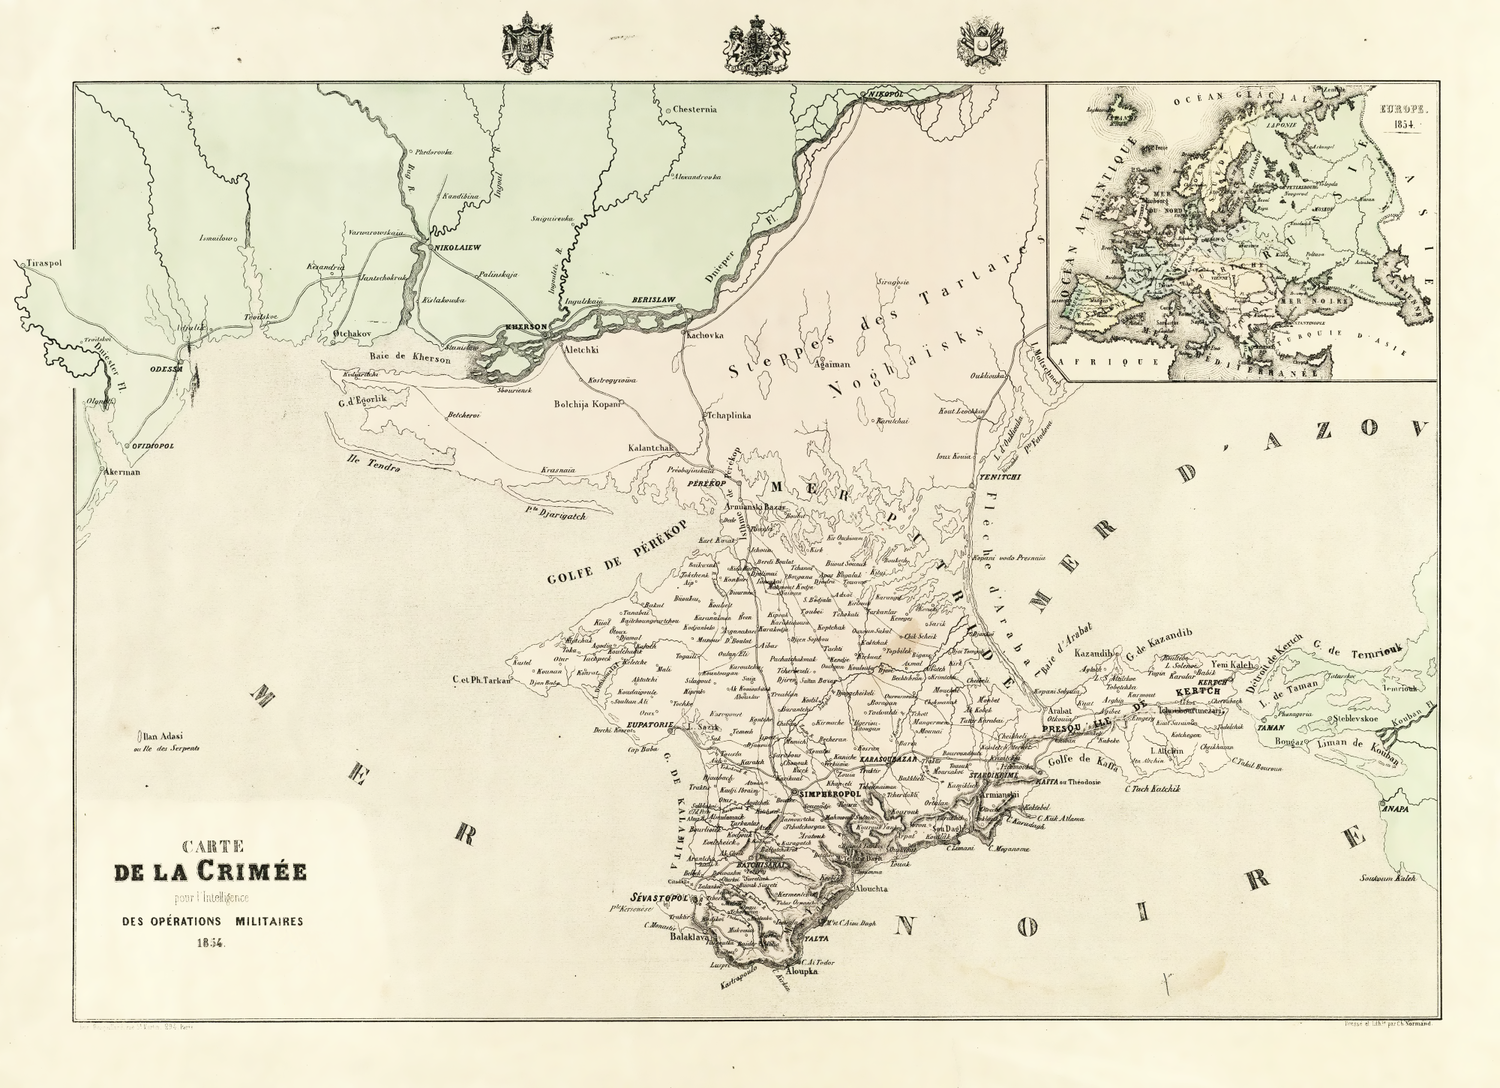 Carte de la Crimee pour l' Intelligence des Operations Militaires 1854